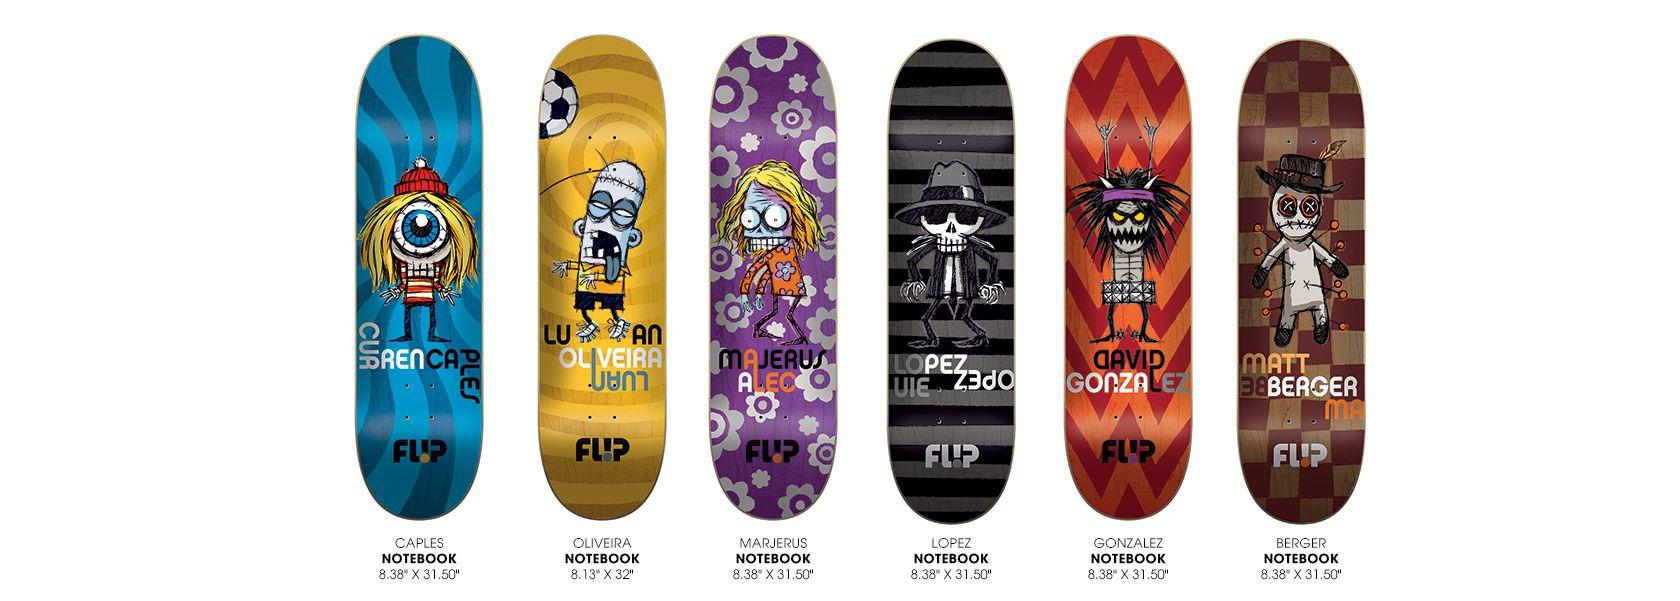 Flip Skate Logo - Flip Skateboards | The Official Website of Flip Skateboards